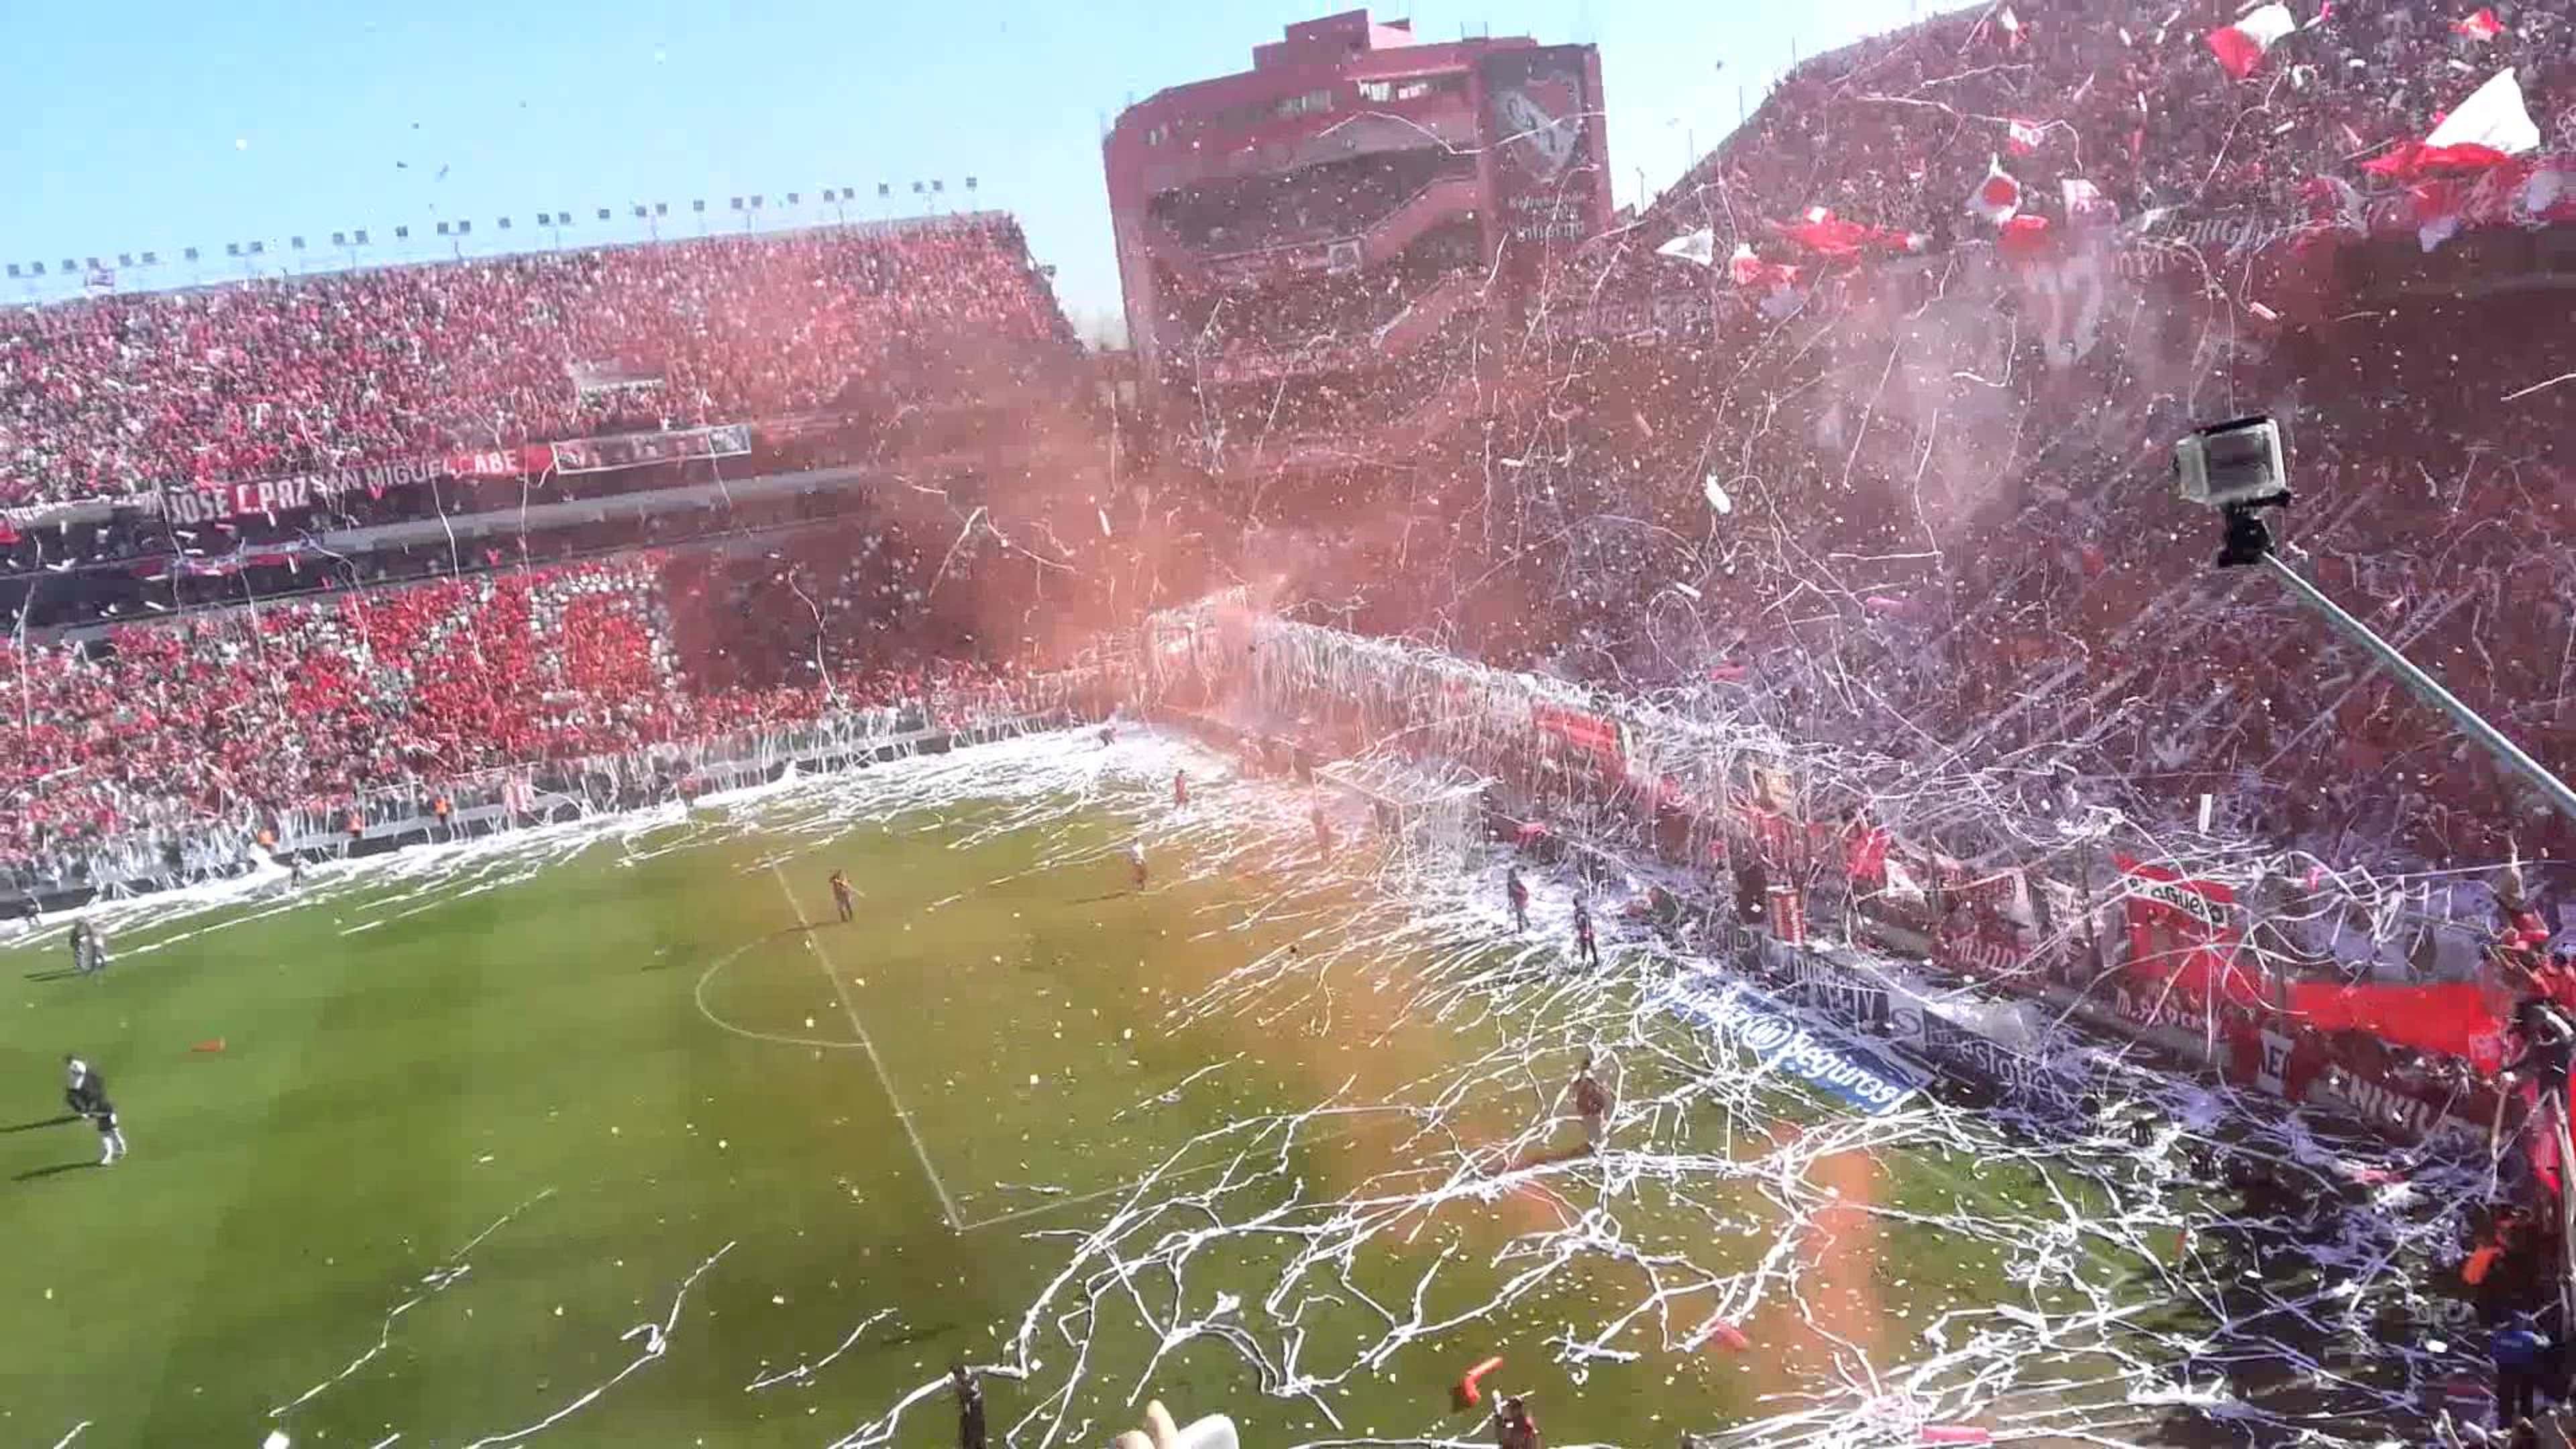 Independiente Estadio Libertadores de America 2015